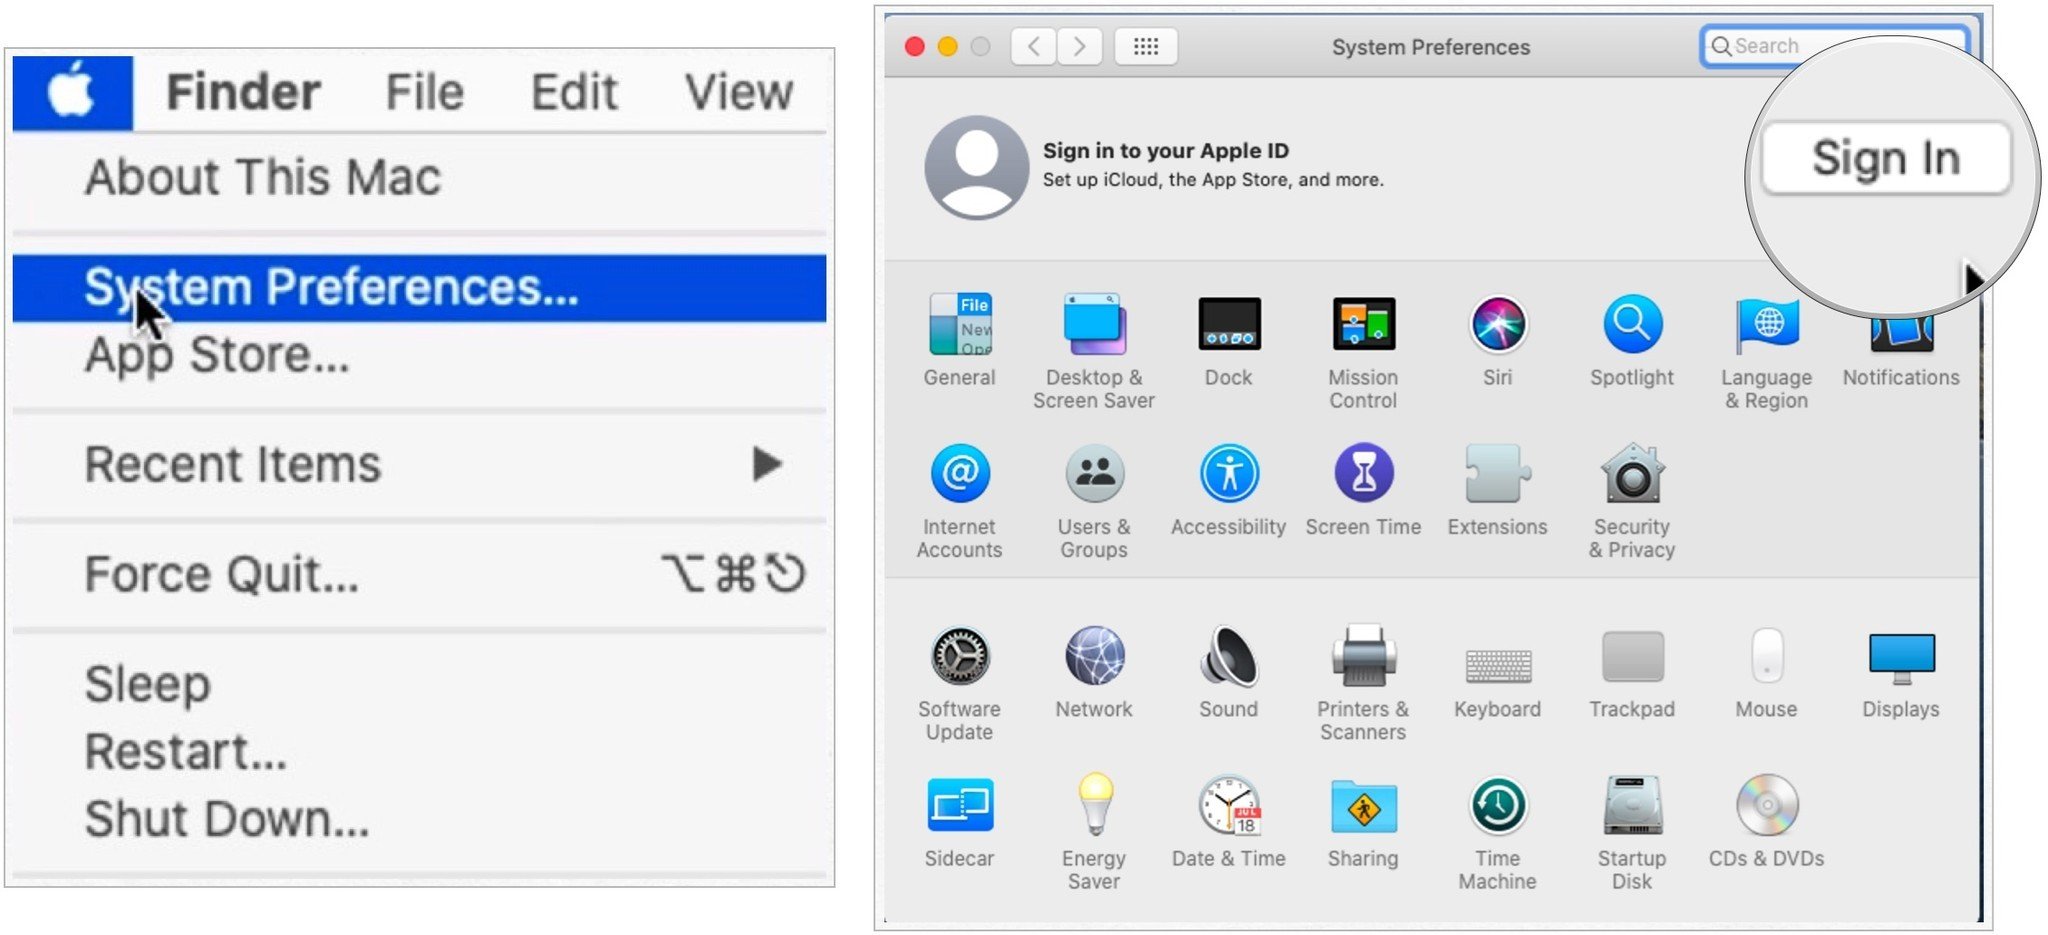 Pour configurer iCloud sur Mac, cliquez sur l'icône Apple dans le coin supérieur gauche de l'écran, puis sélectionnez Préférences Système.  Choisissez Se connecter.